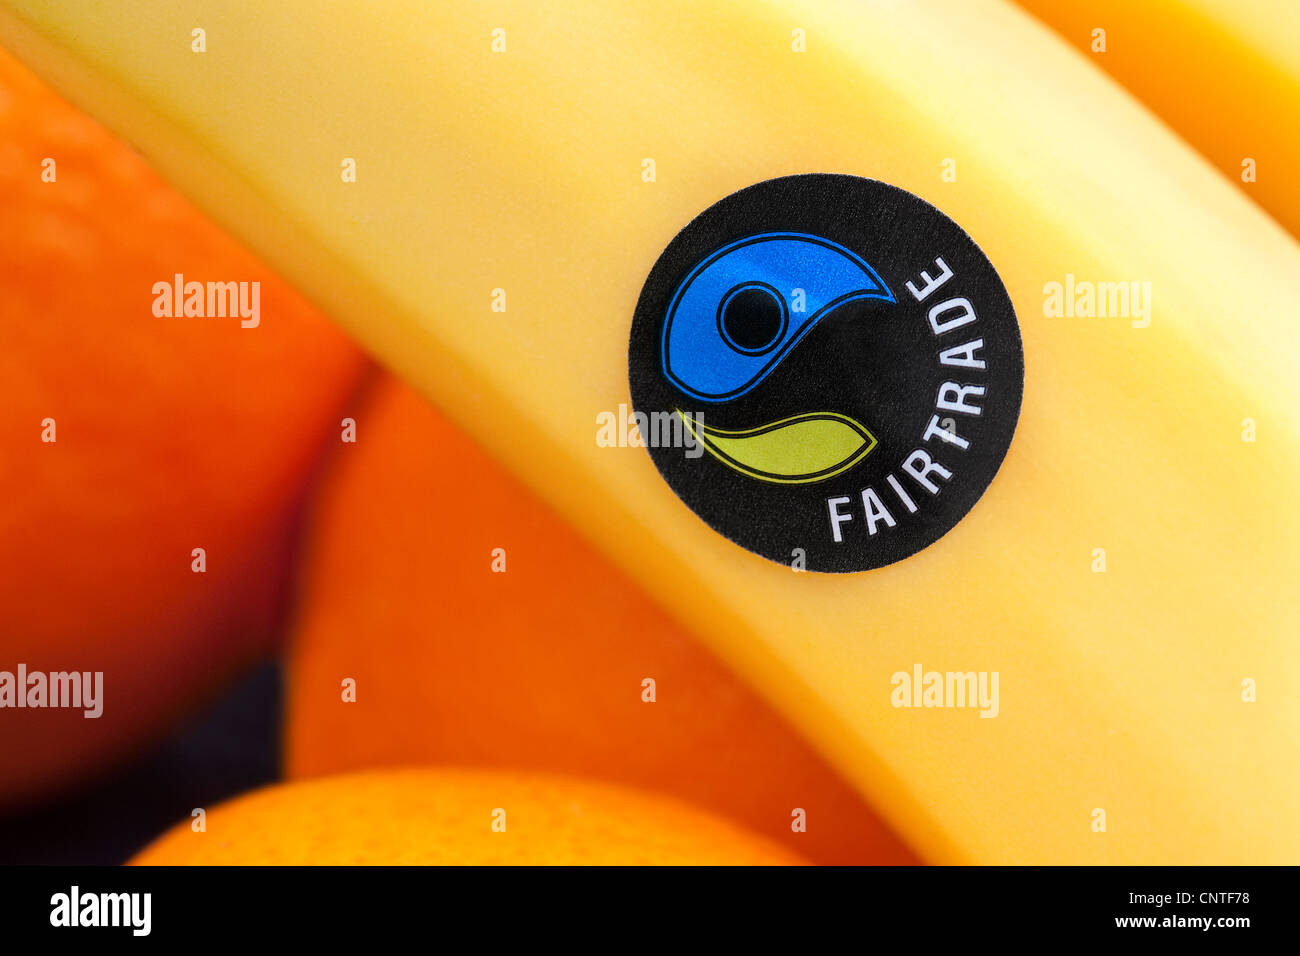 fairtrade logo on banana fruit sticker Stock Photo